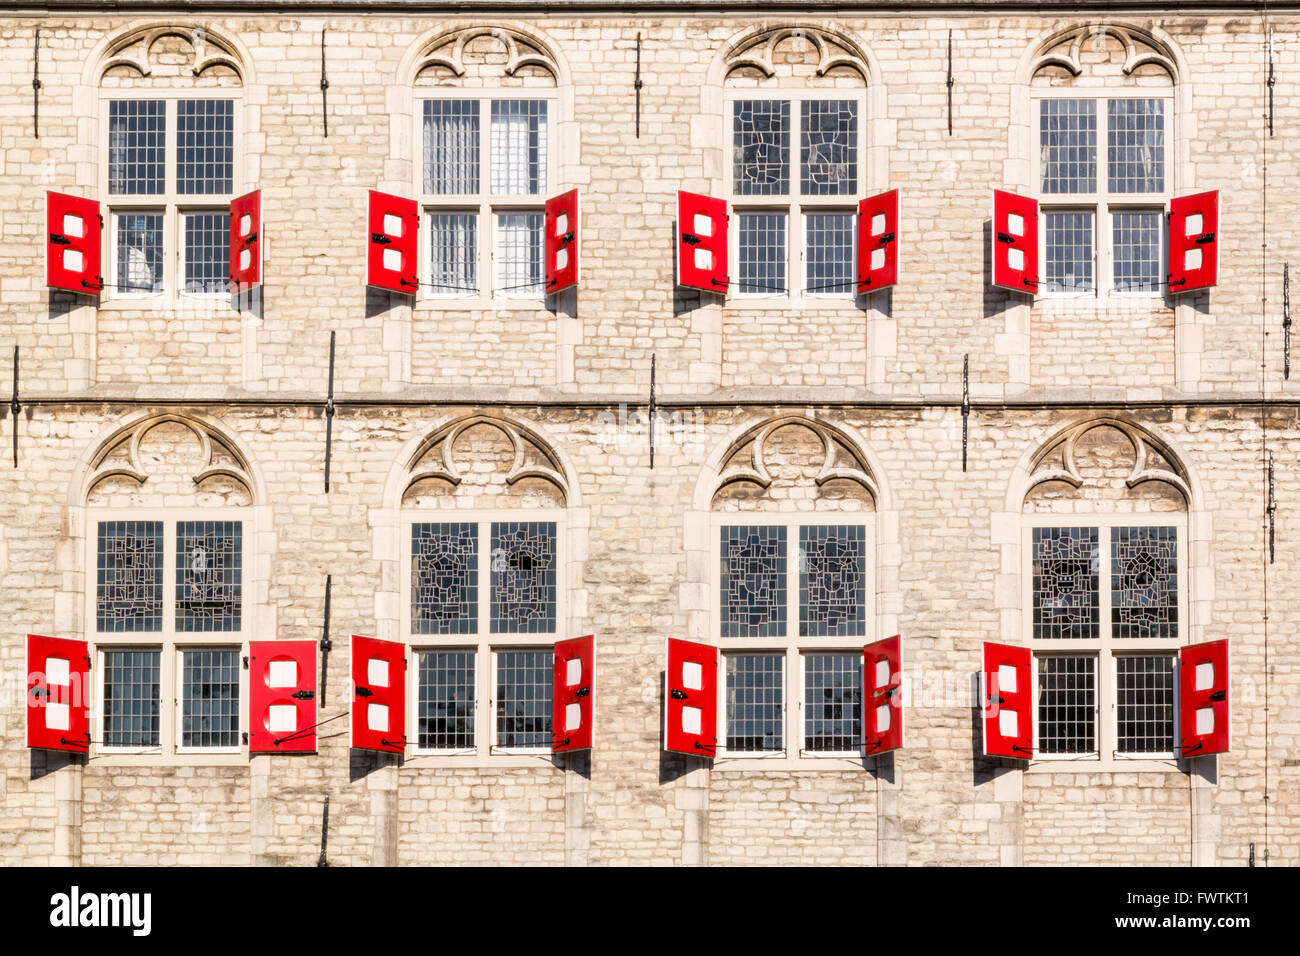 Façade avec fenêtres et volets rouges de l'hôtel de ville sur la place du marché à Gouda, Pays-Bas Banque D'Images